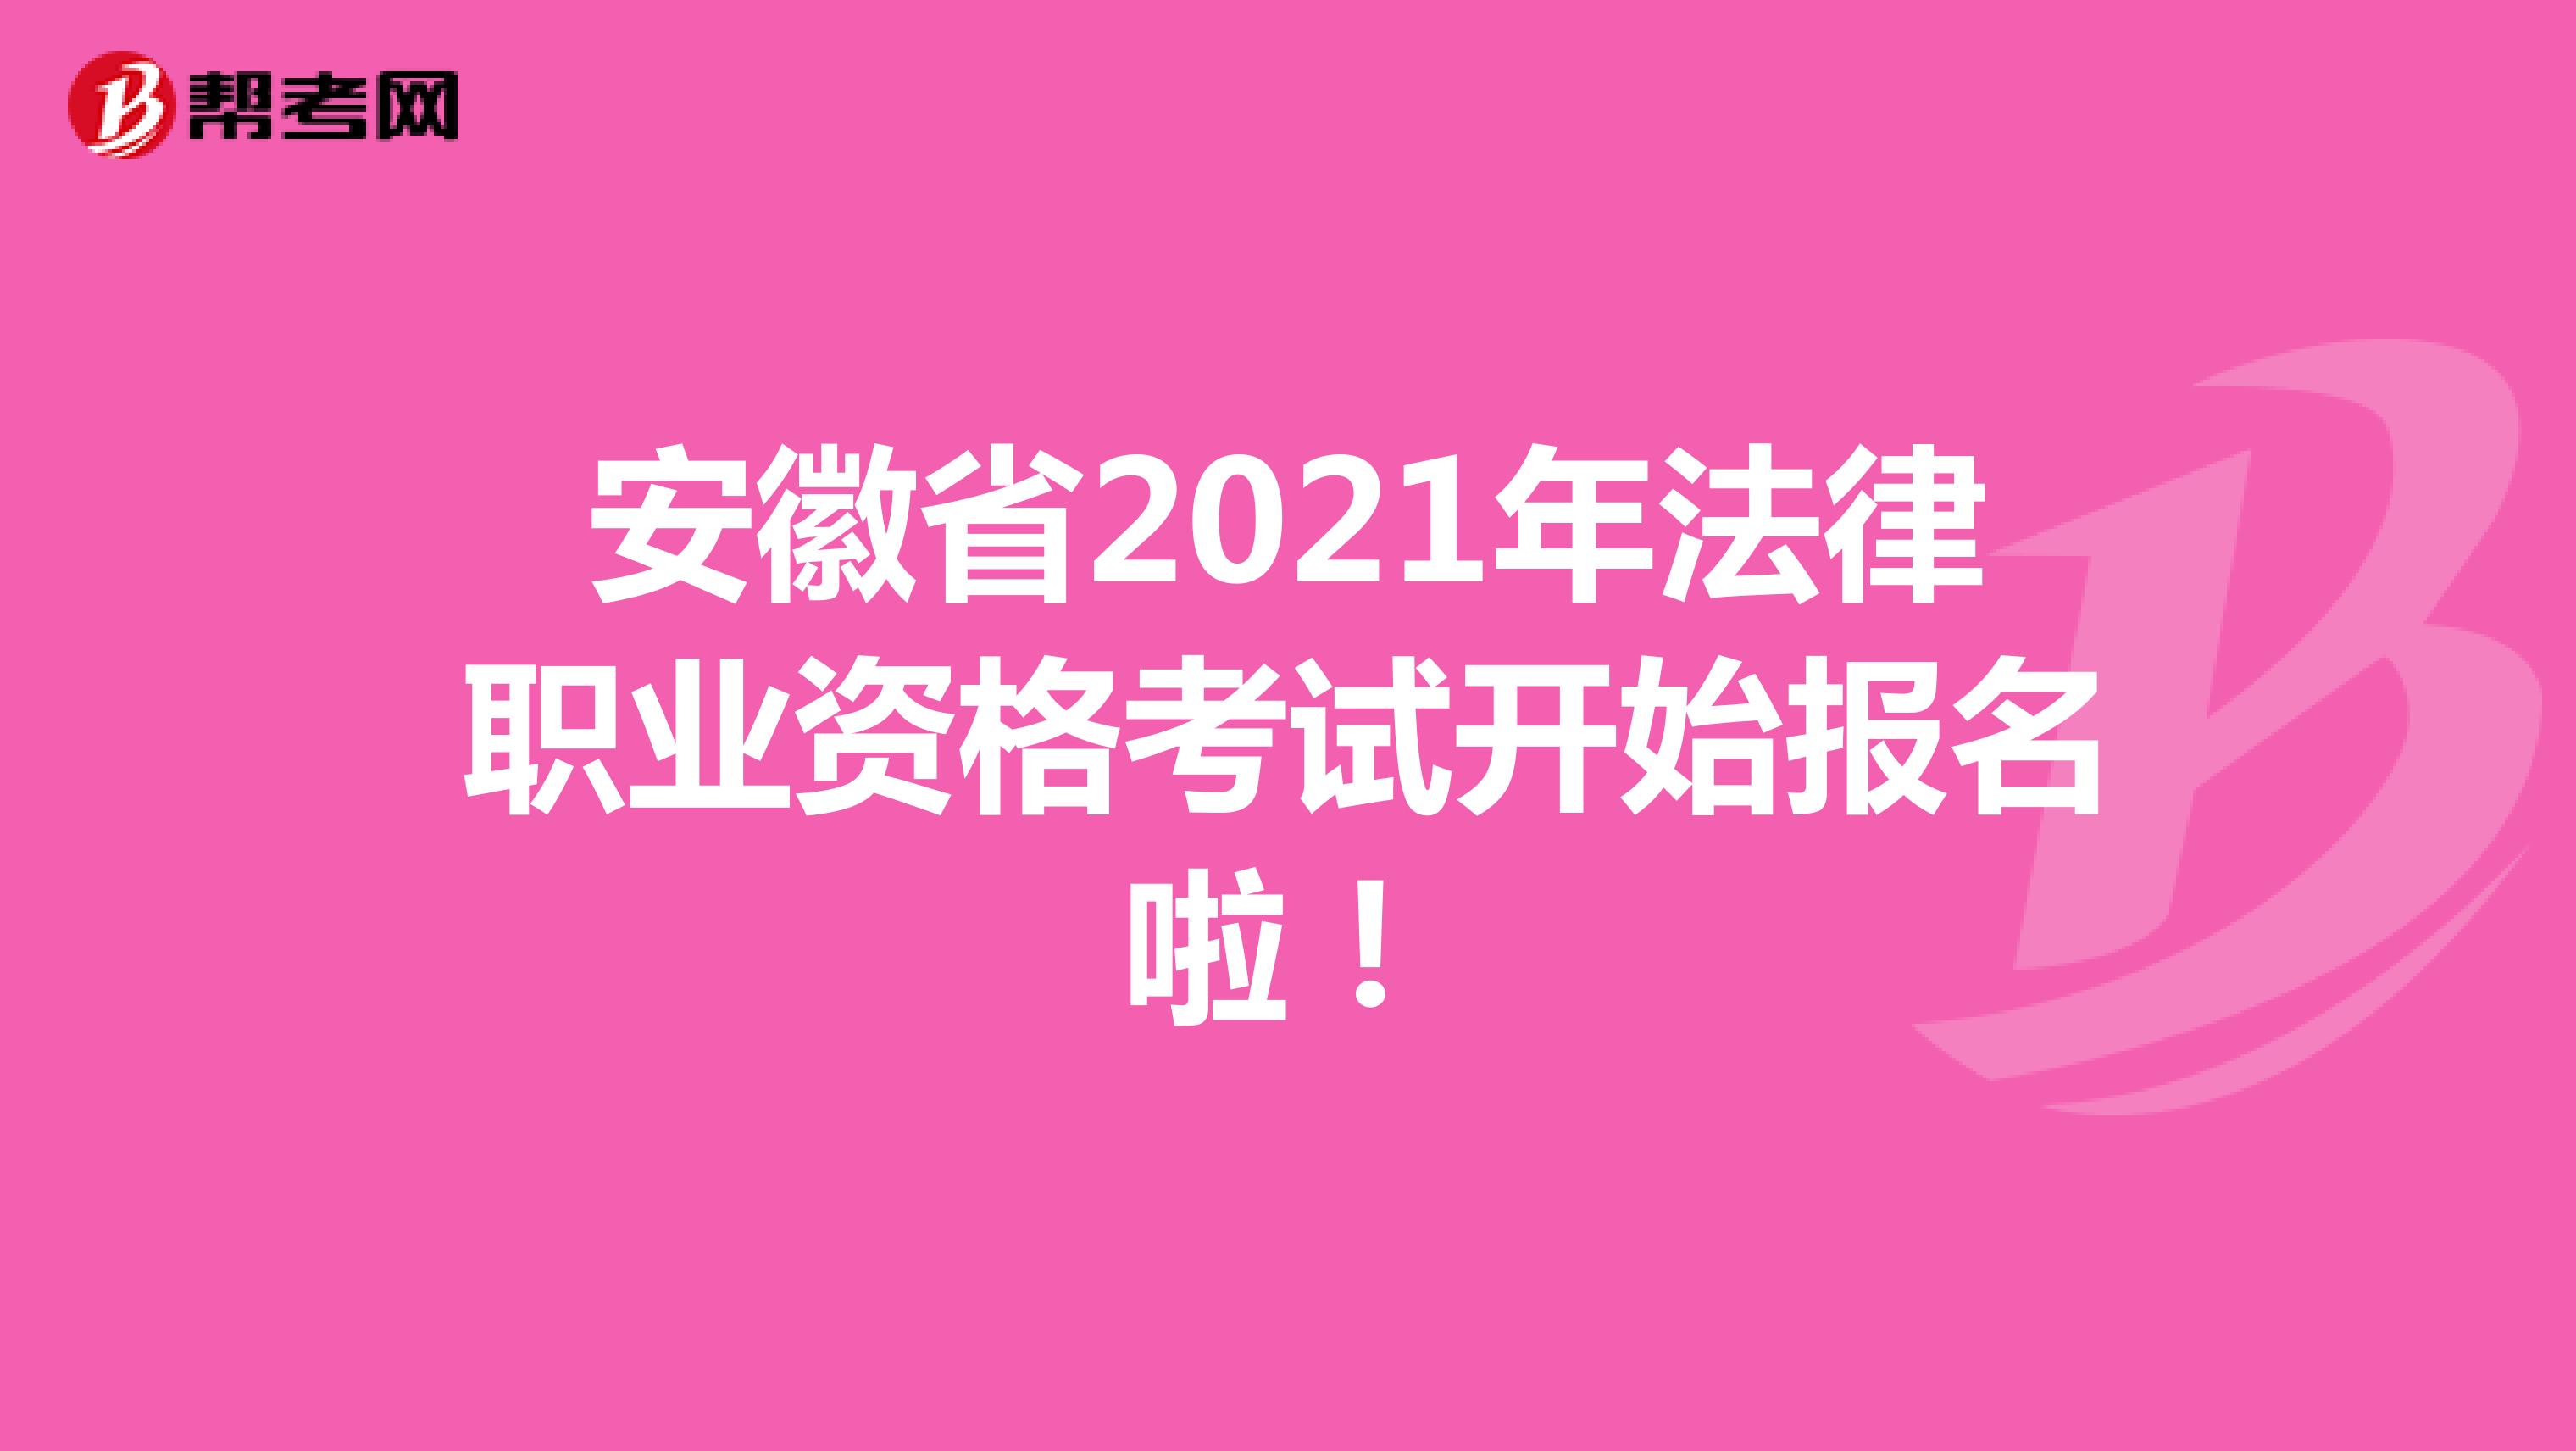 安徽省2021年法律职业资格考试开始报名啦！